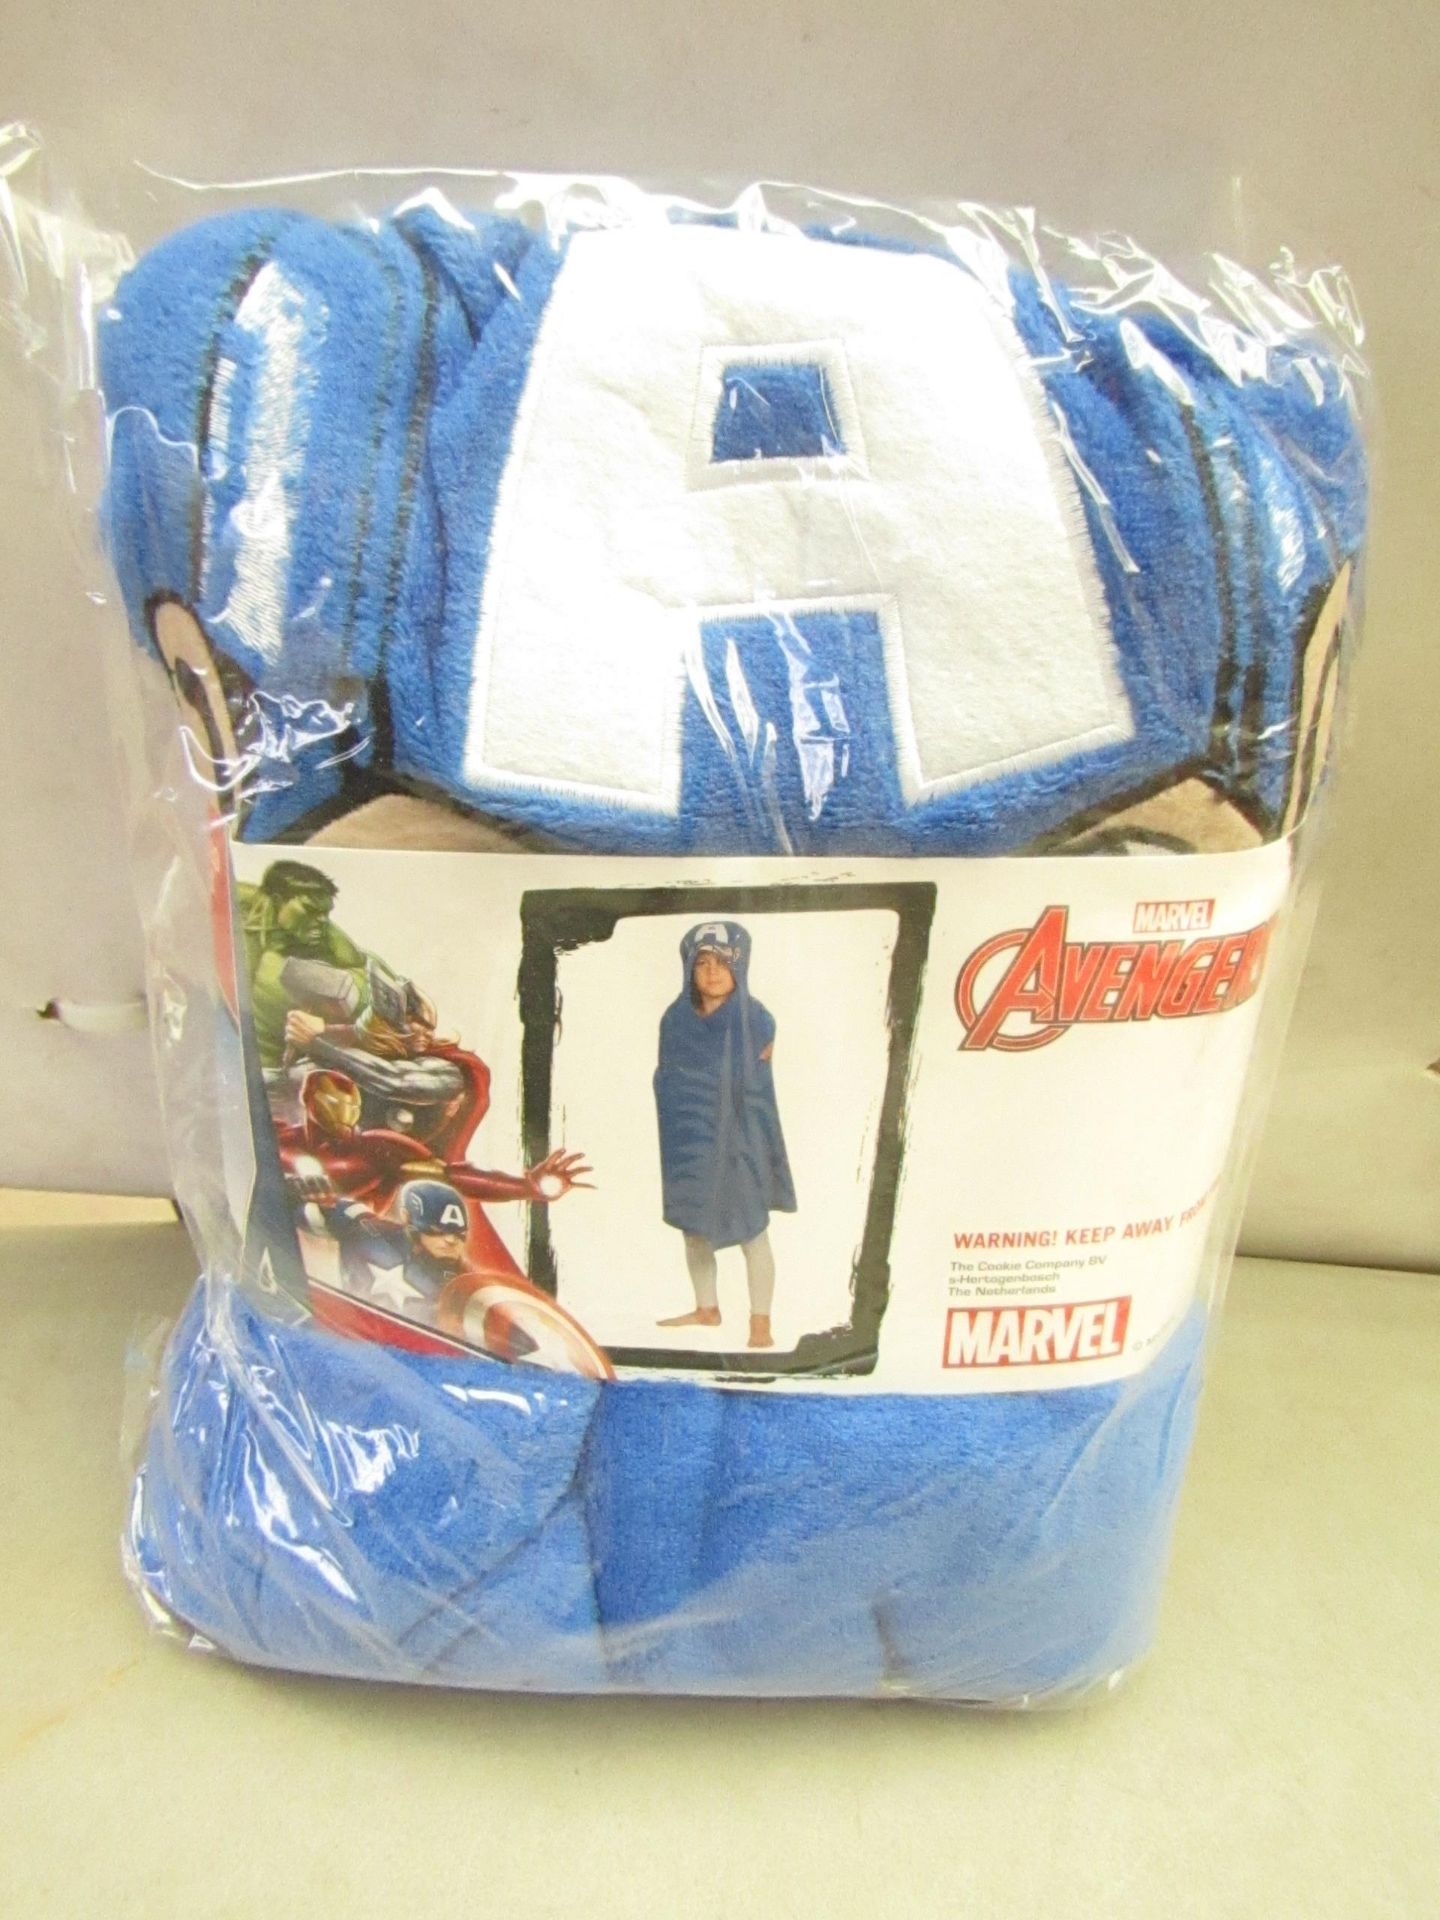 Marvel Avengers Cuddle Robe. 80cm x 120cm. New & packaged